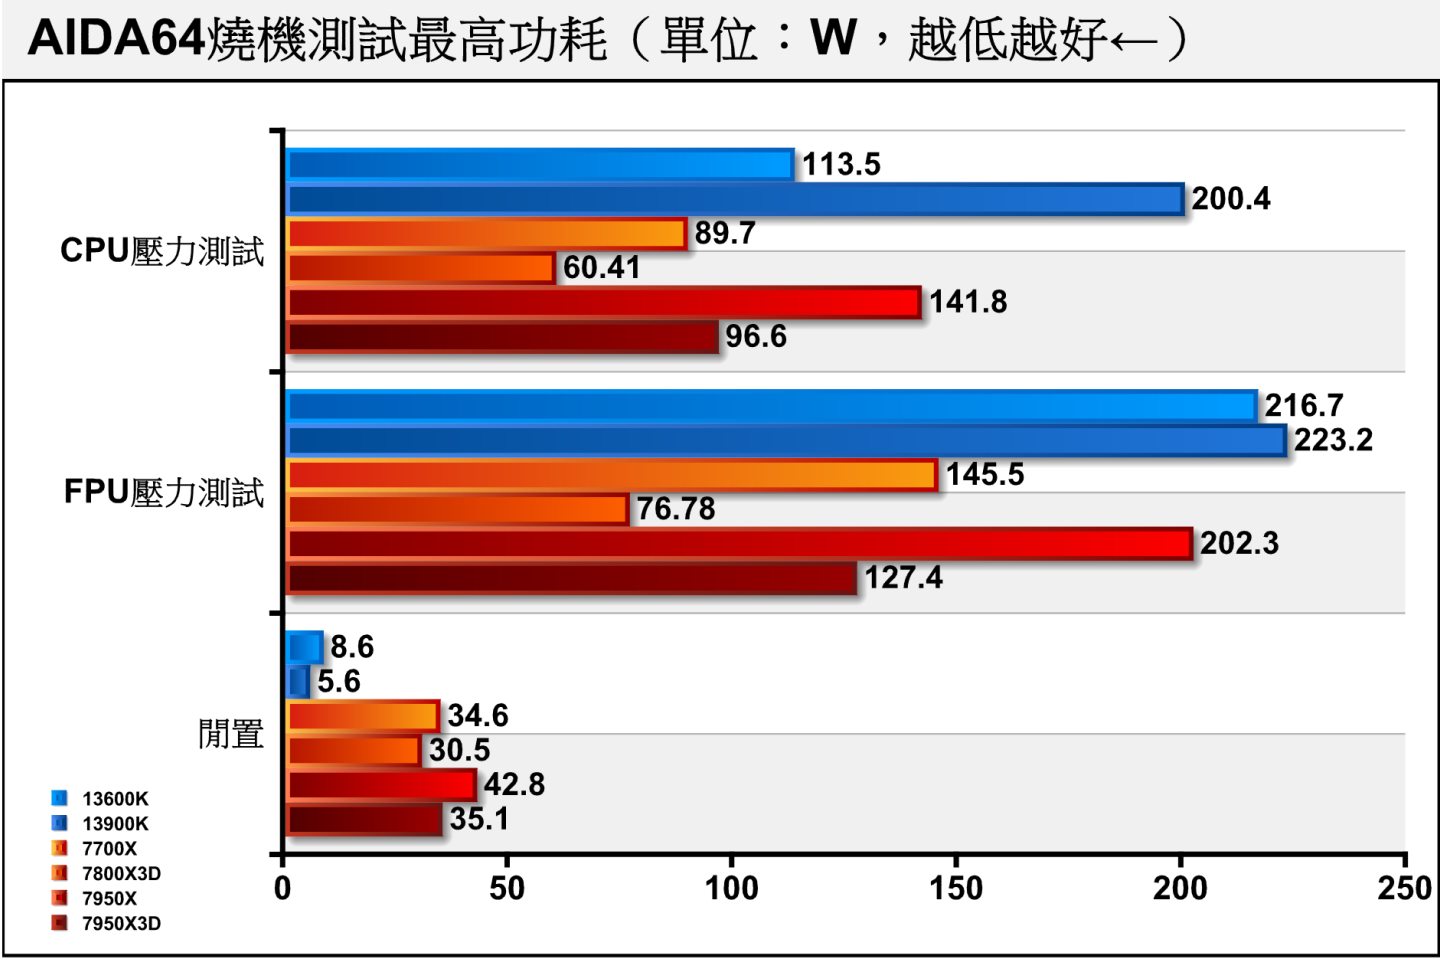 燒機的最高功耗也只76.78W，比規格TDP的120W低了不少。